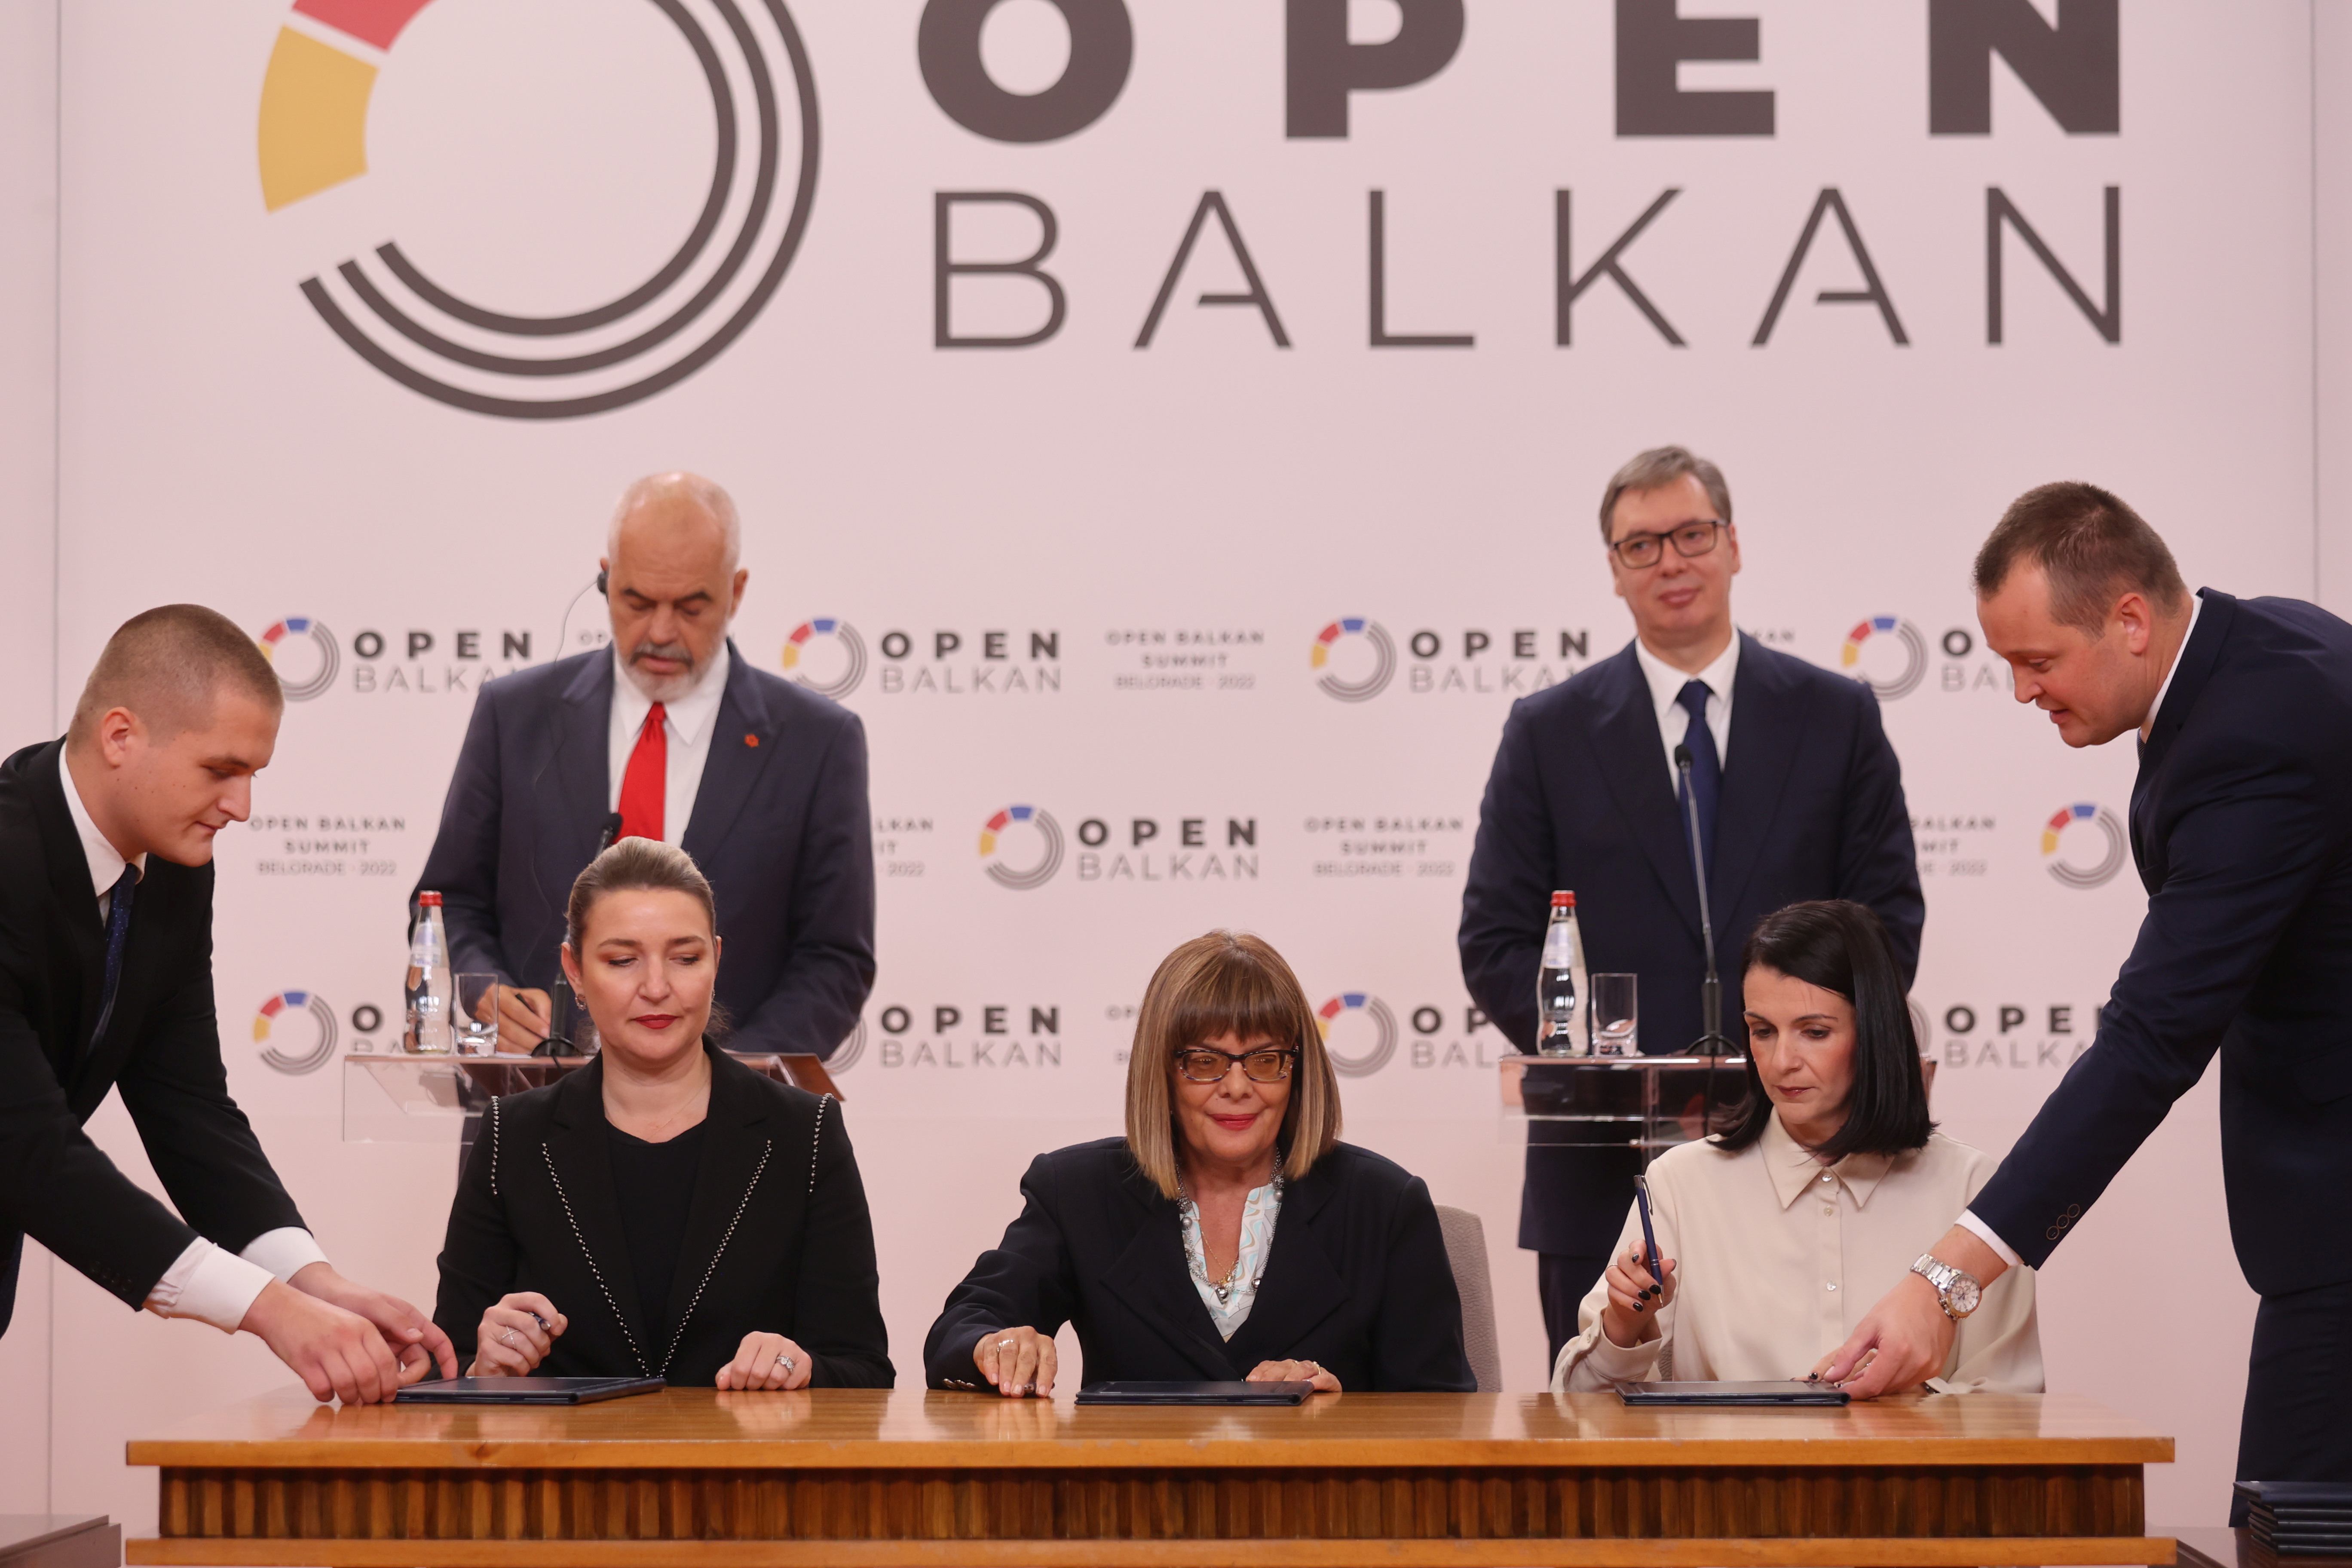 Србија, Северна Македонија и Албанија потписале Меморандум о сарадњи у области филма